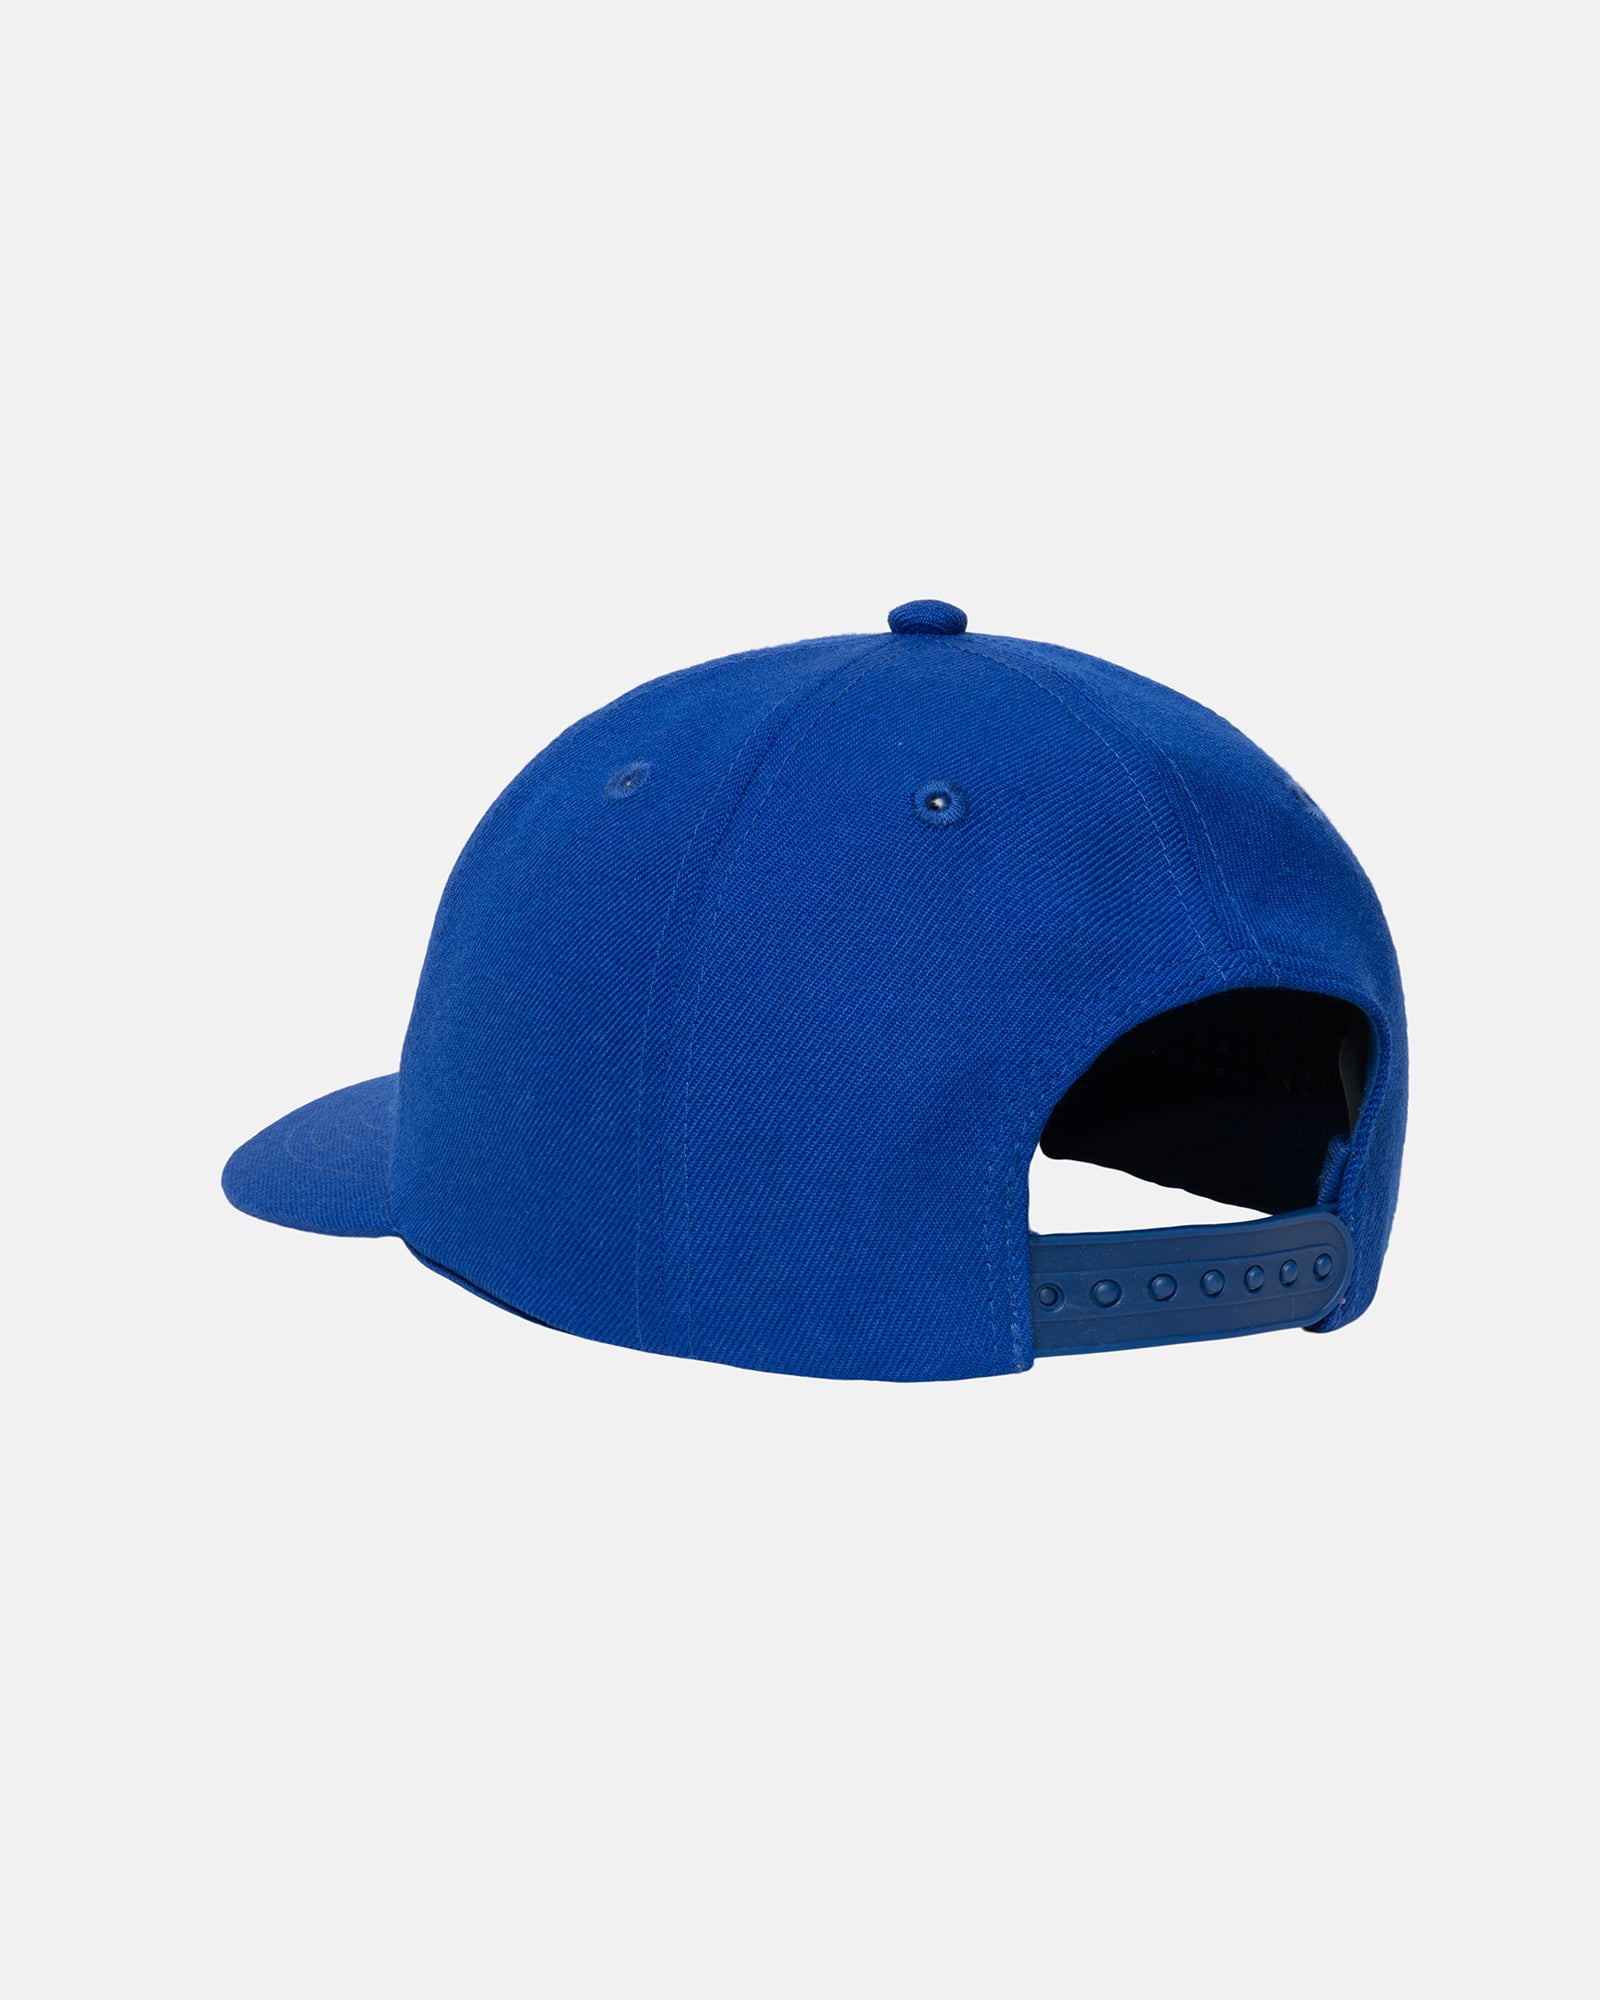 Stüssy Low Pro Stock Dice Snapback Blue Headwear